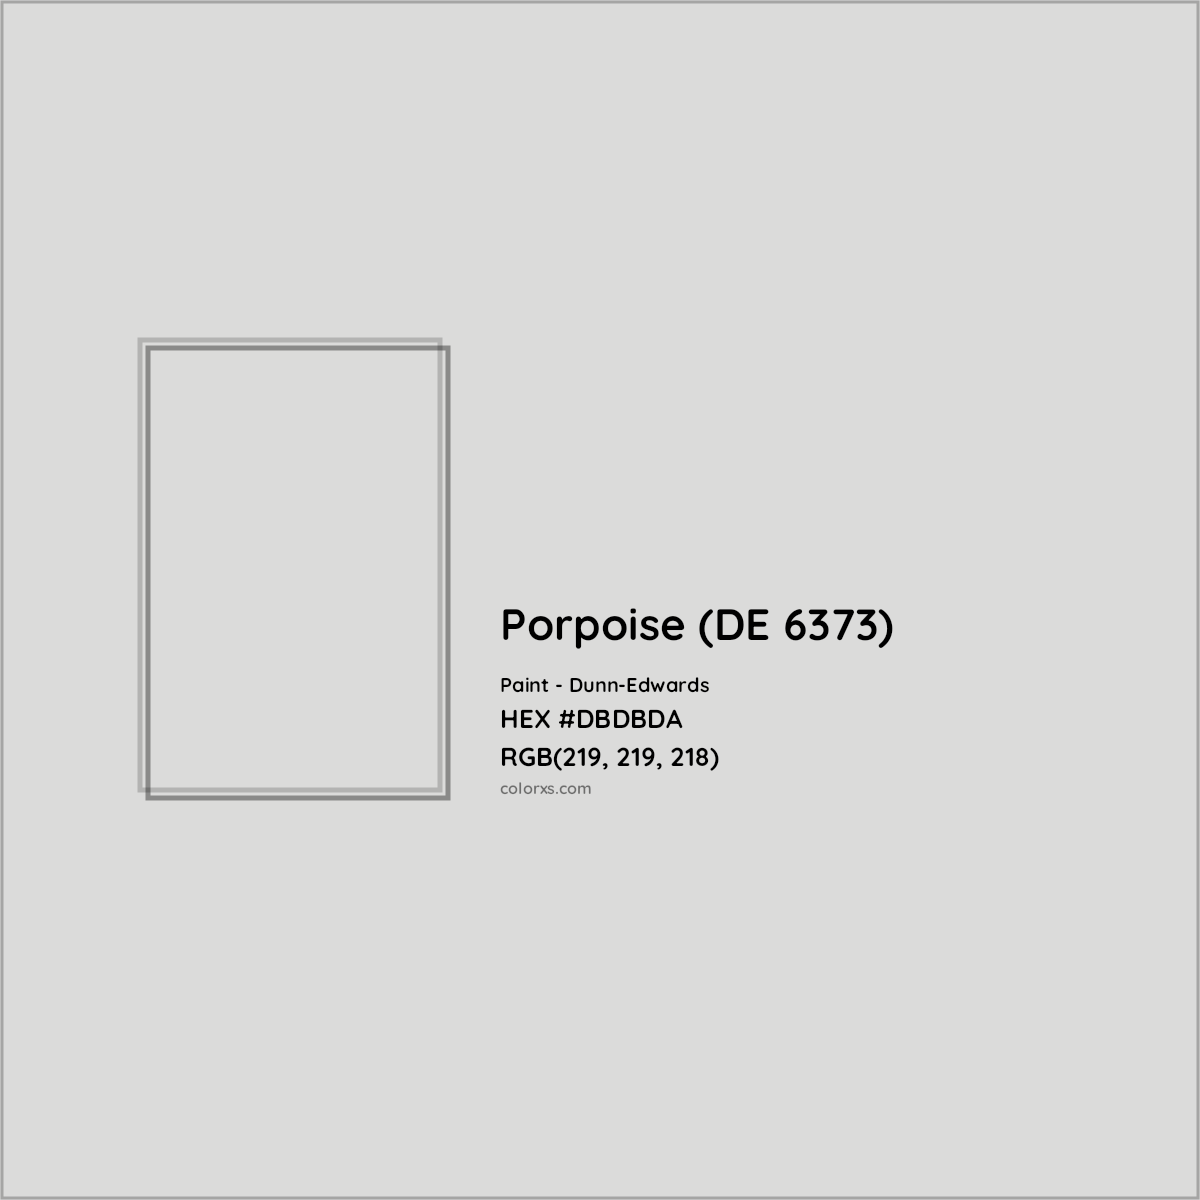 HEX #DBDBDA Porpoise (DE 6373) Paint Dunn-Edwards - Color Code